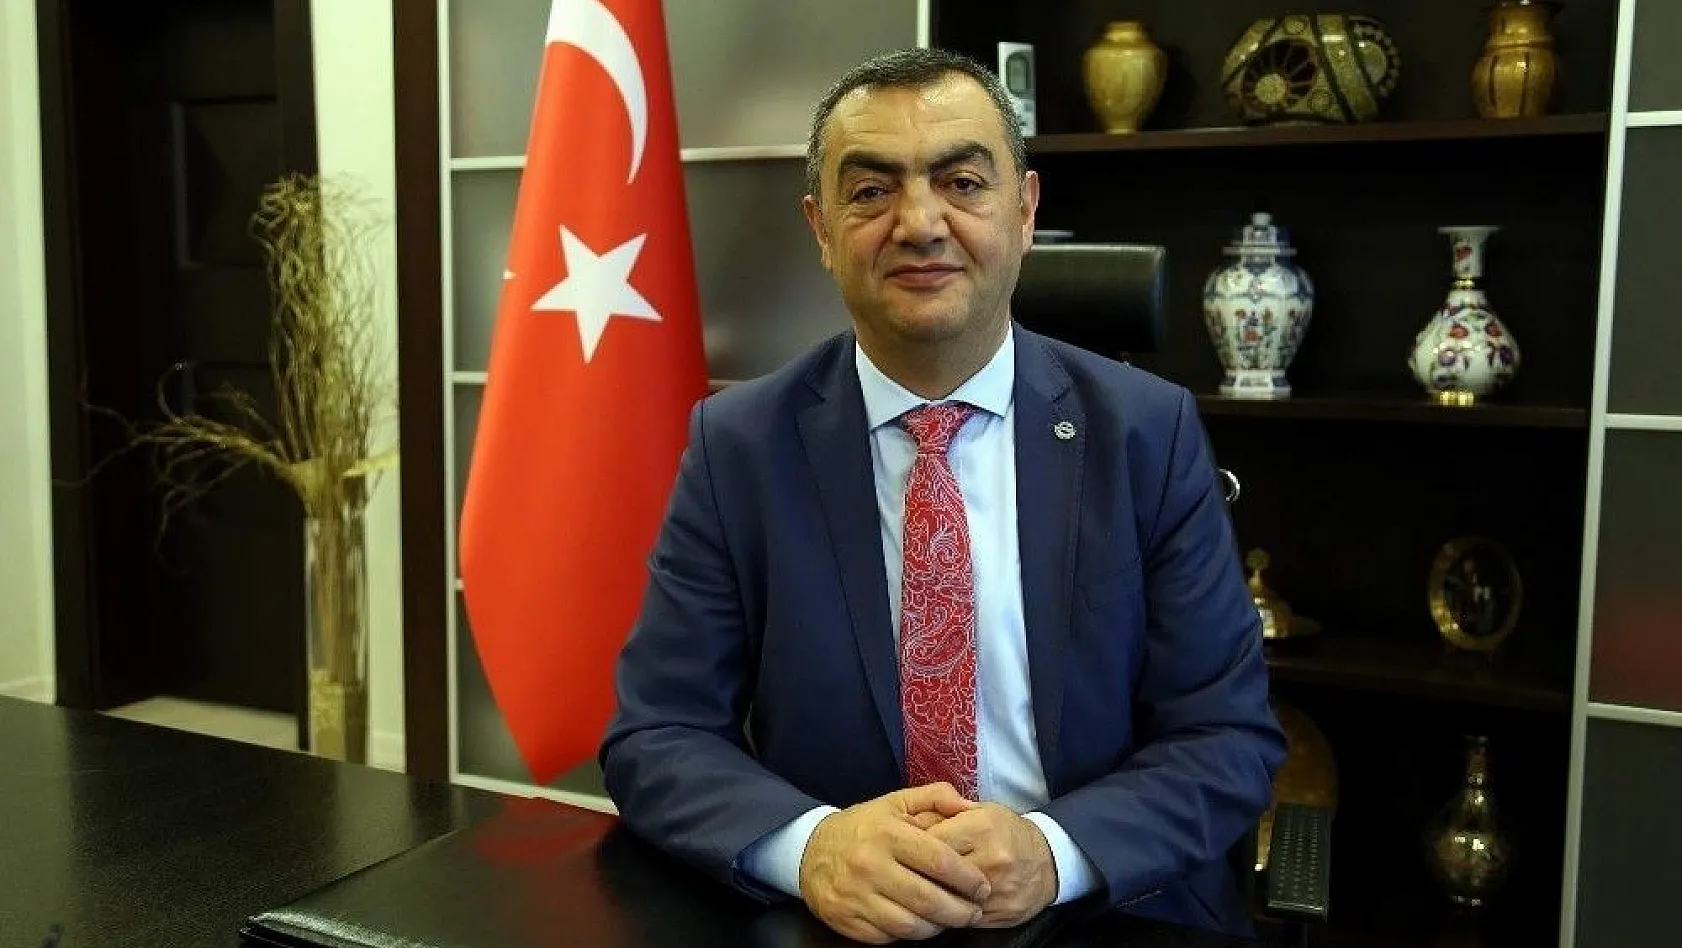 KAYSO Başkanı Büyüksimitci: 'Türkiye Cumhuriyeti'ni bölmeye yönelik alçakça girişimler, hiçbir zaman amacına ulaşamayacaktır'
